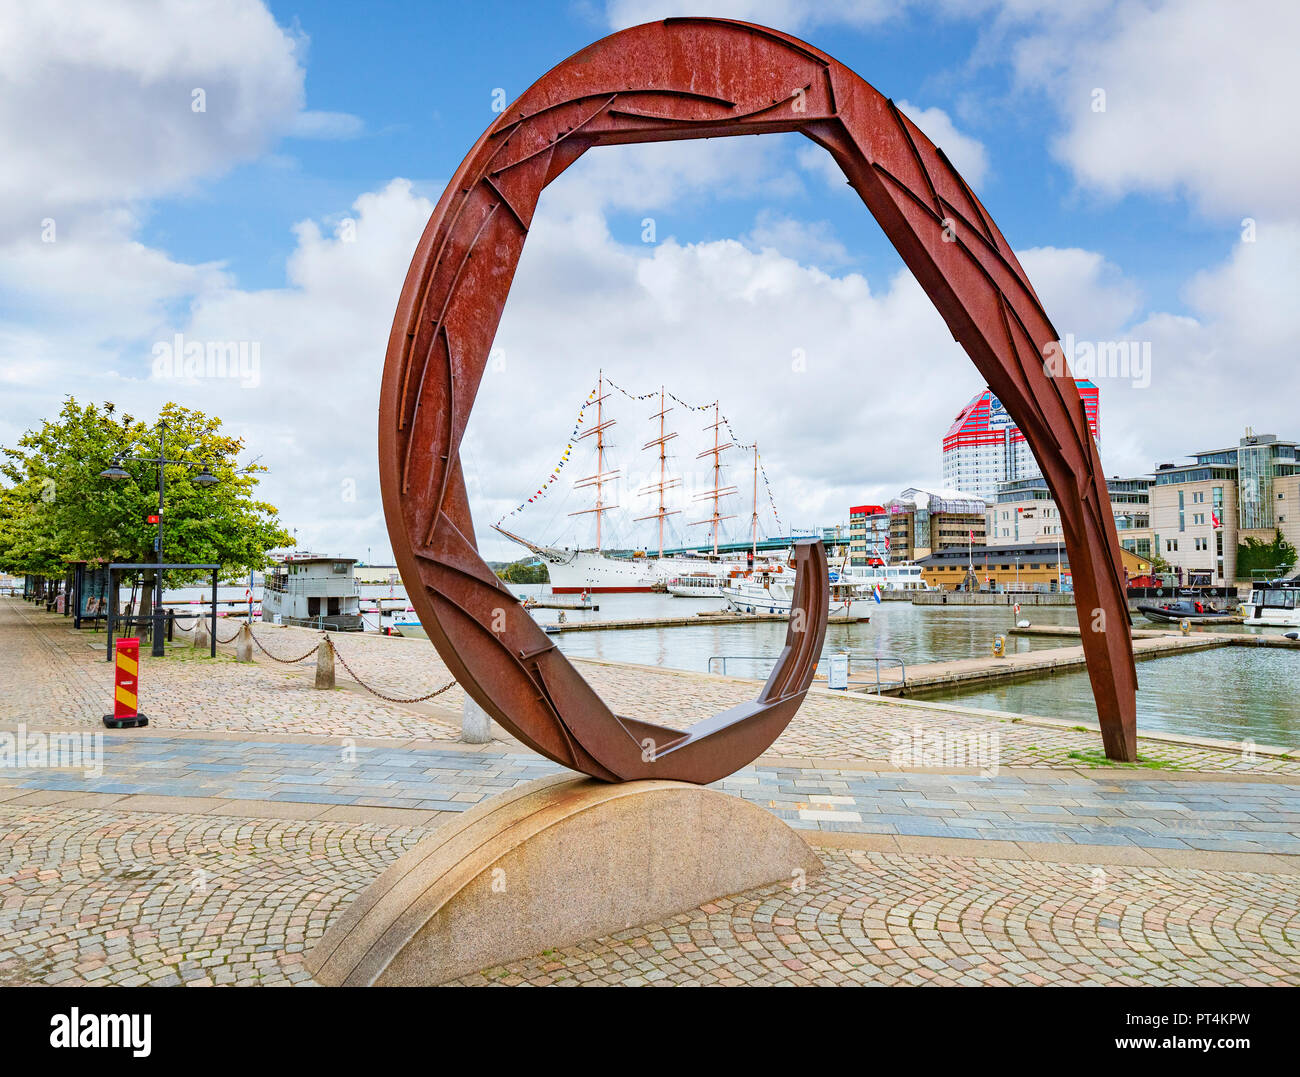 14 Settembre 2018: Gothenburg, Svezia - arte moderna a Lilla Bommens Torg, con una vista della piazza rigger presso il porto. Foto Stock